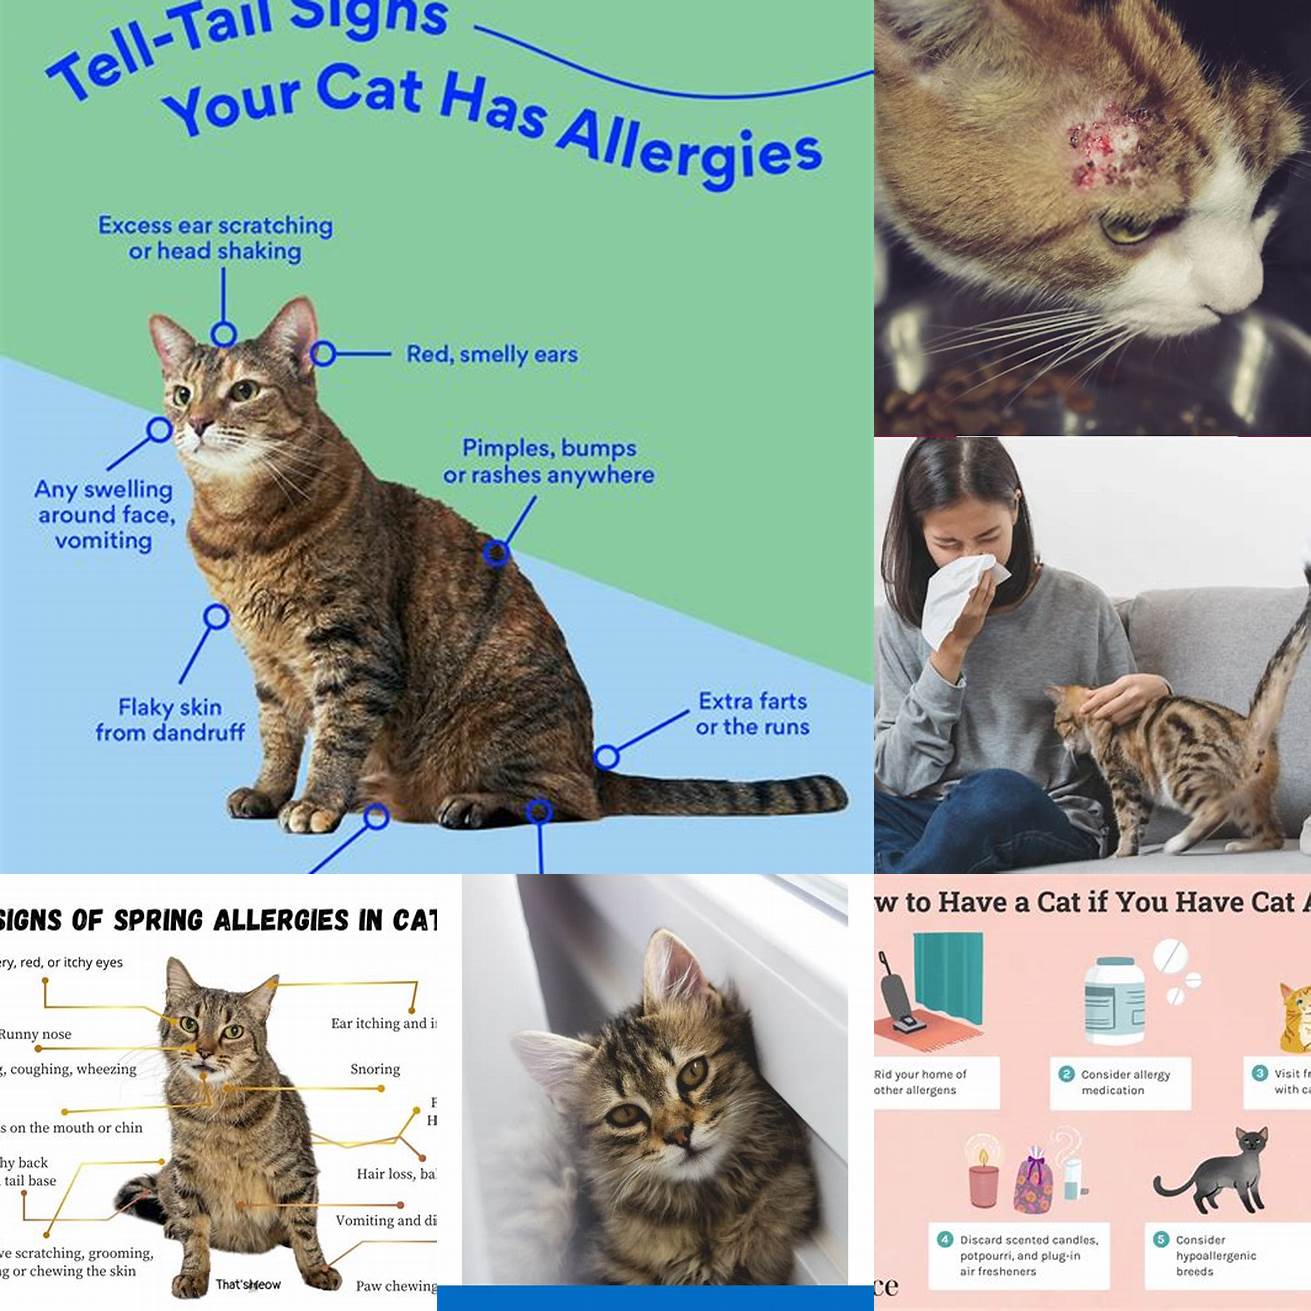 Cat allergies